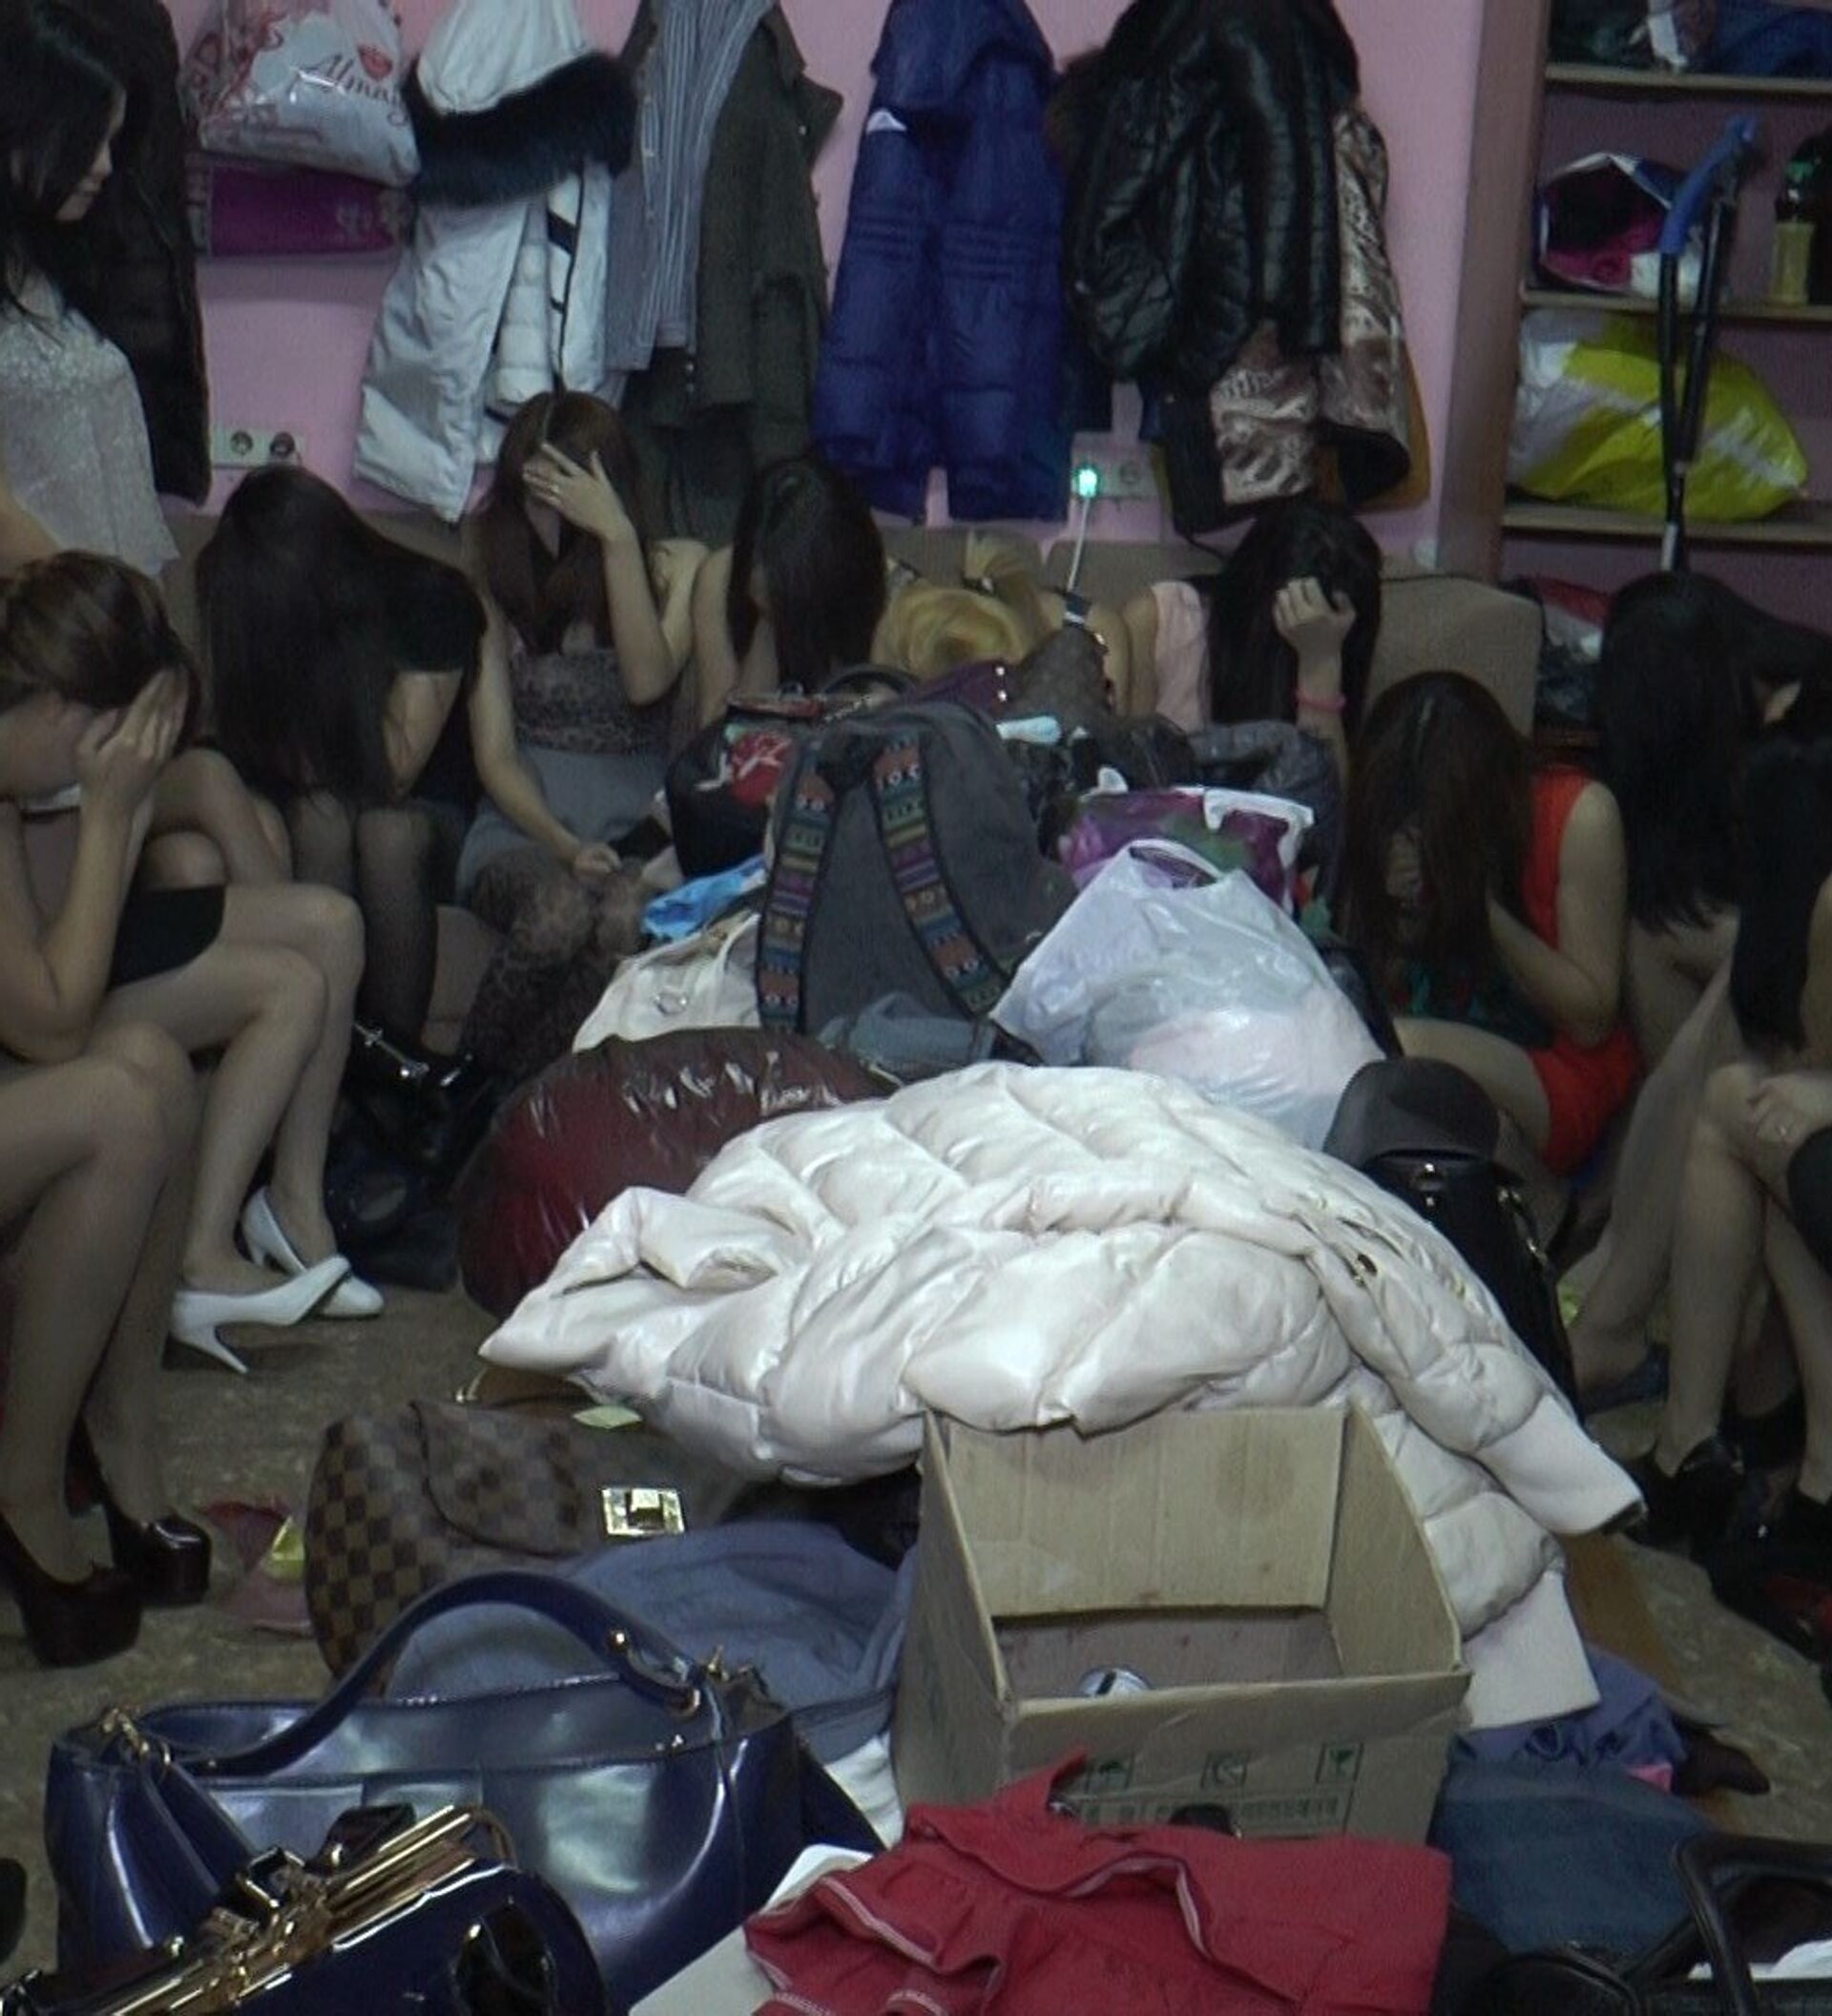 Услуги Проституток В Алматы